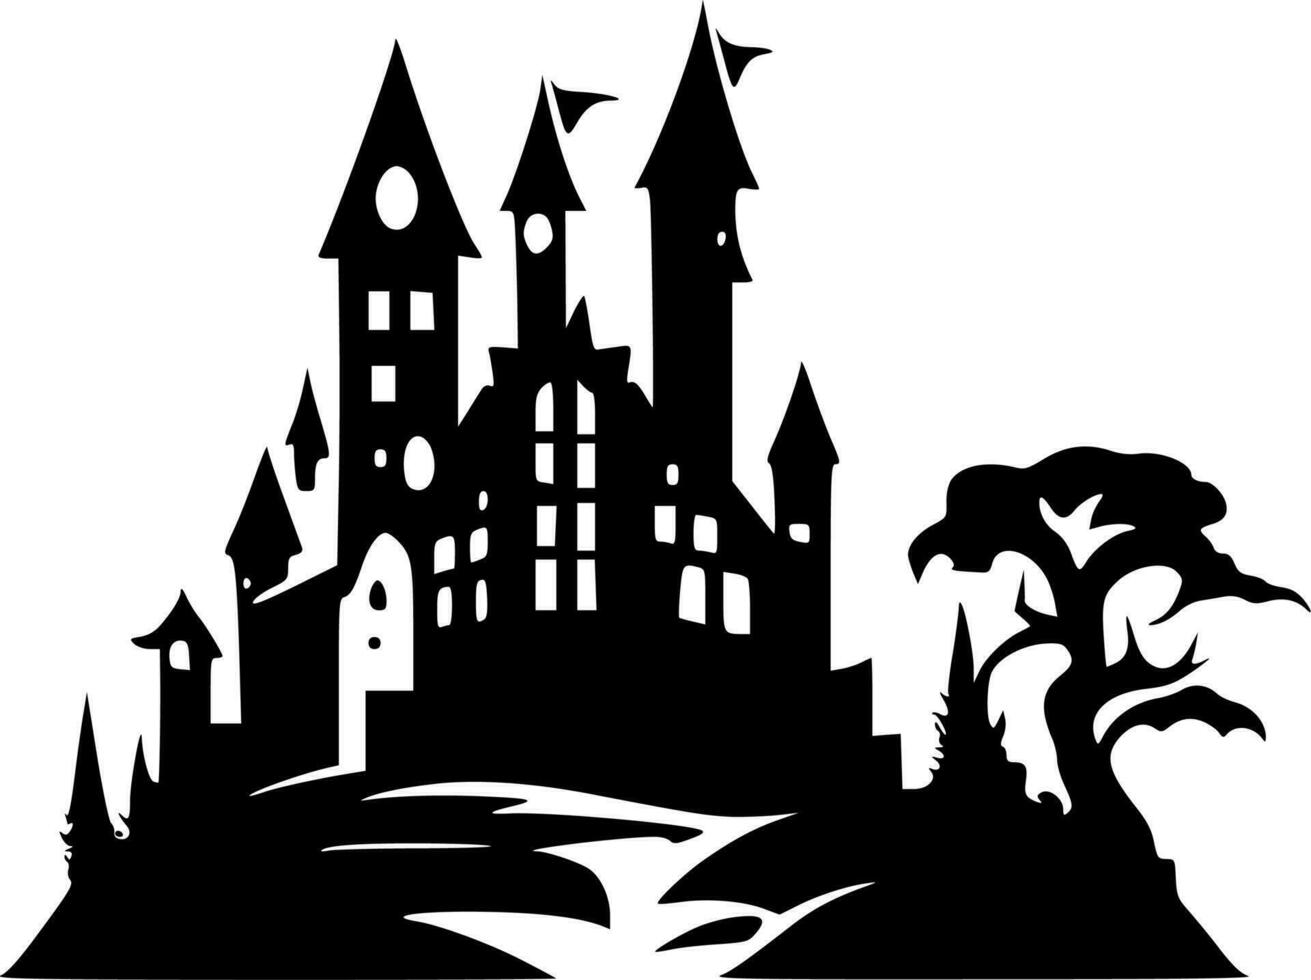 slott - svart och vit isolerat ikon - vektor illustration